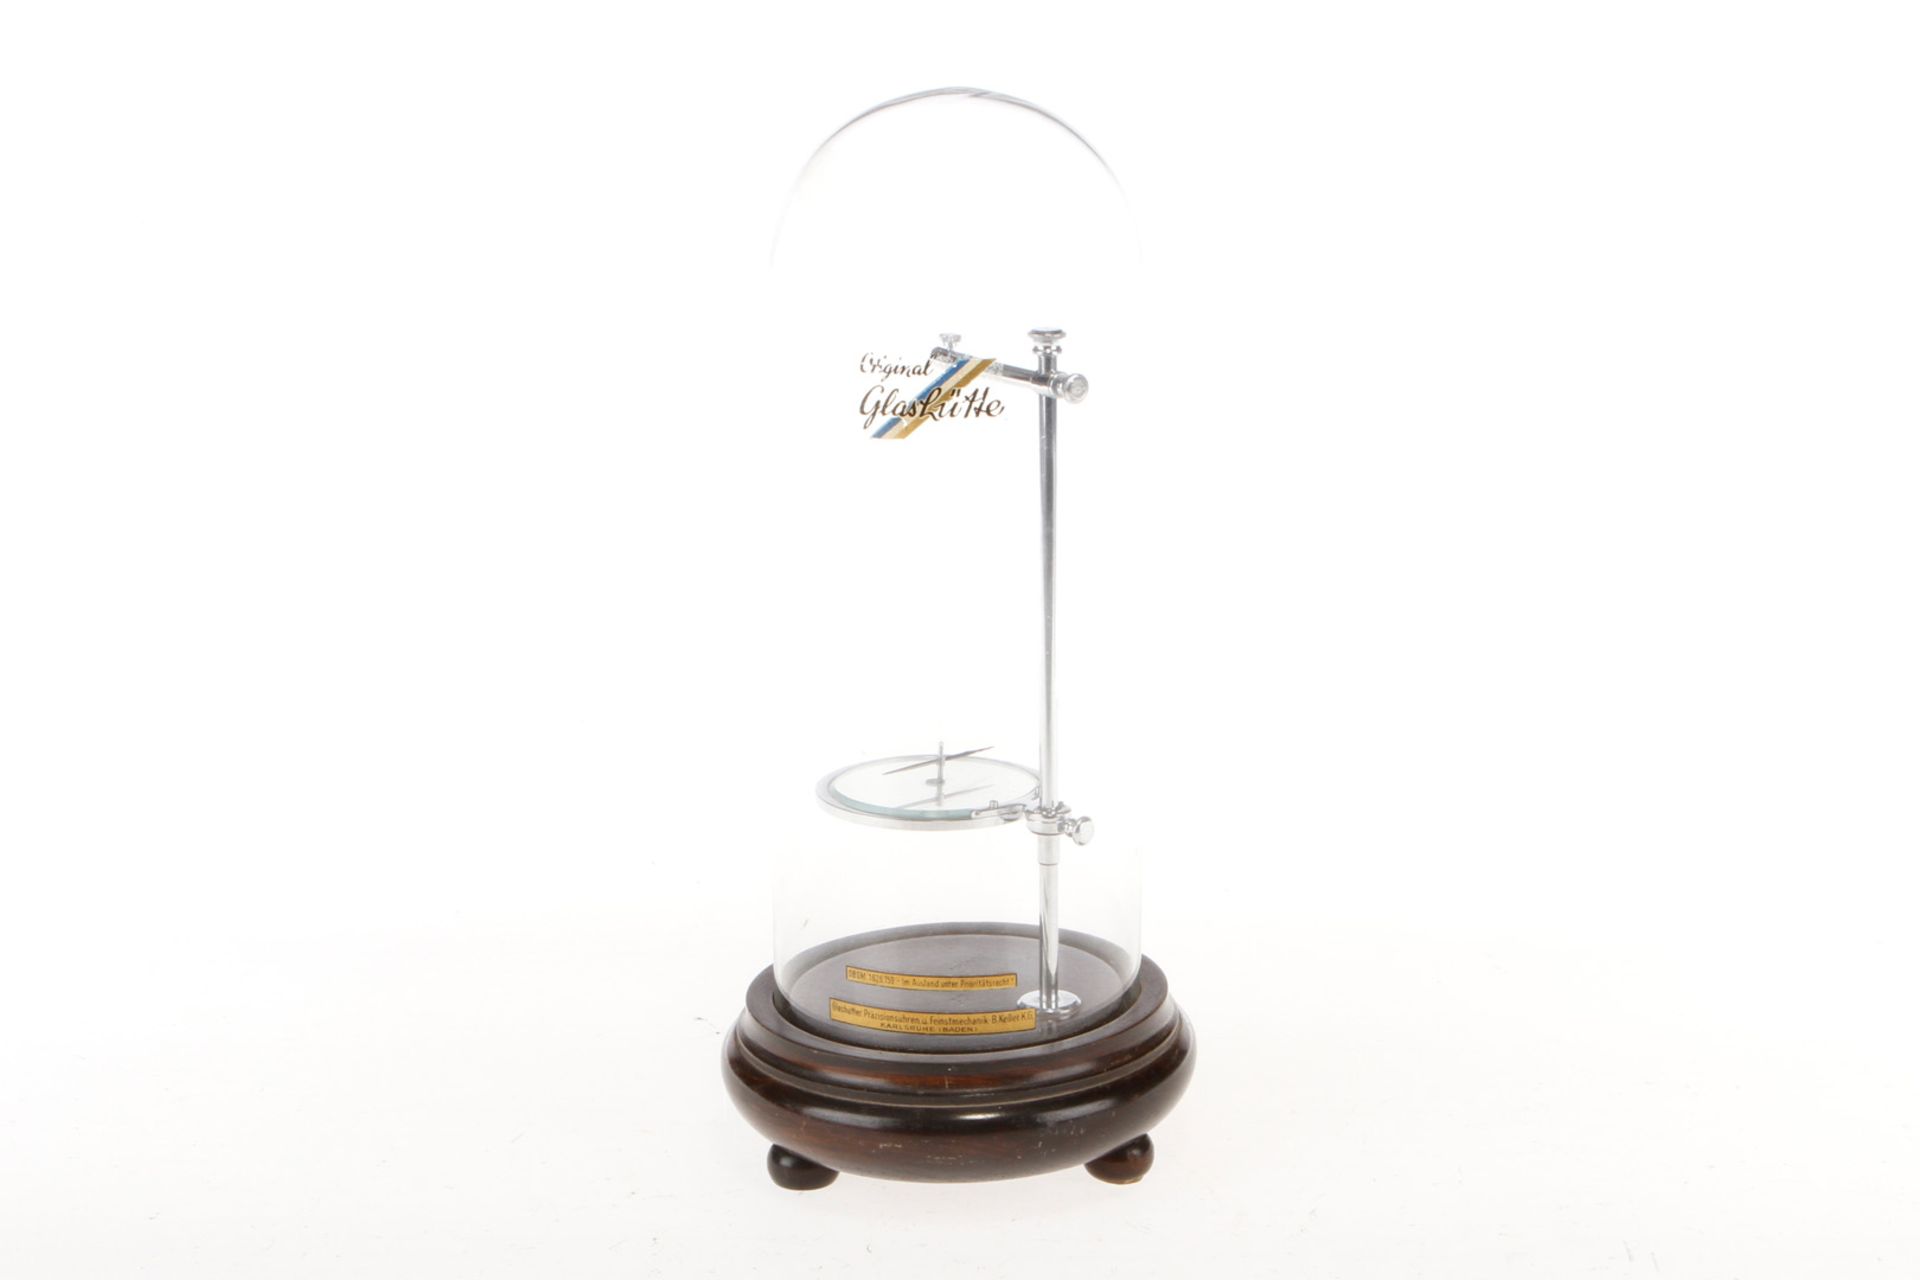 Original Glashütte astatisches Nadelpaar, altes Uhrmacherwerkzeug, unter Glasdom, auf Holzsockel,